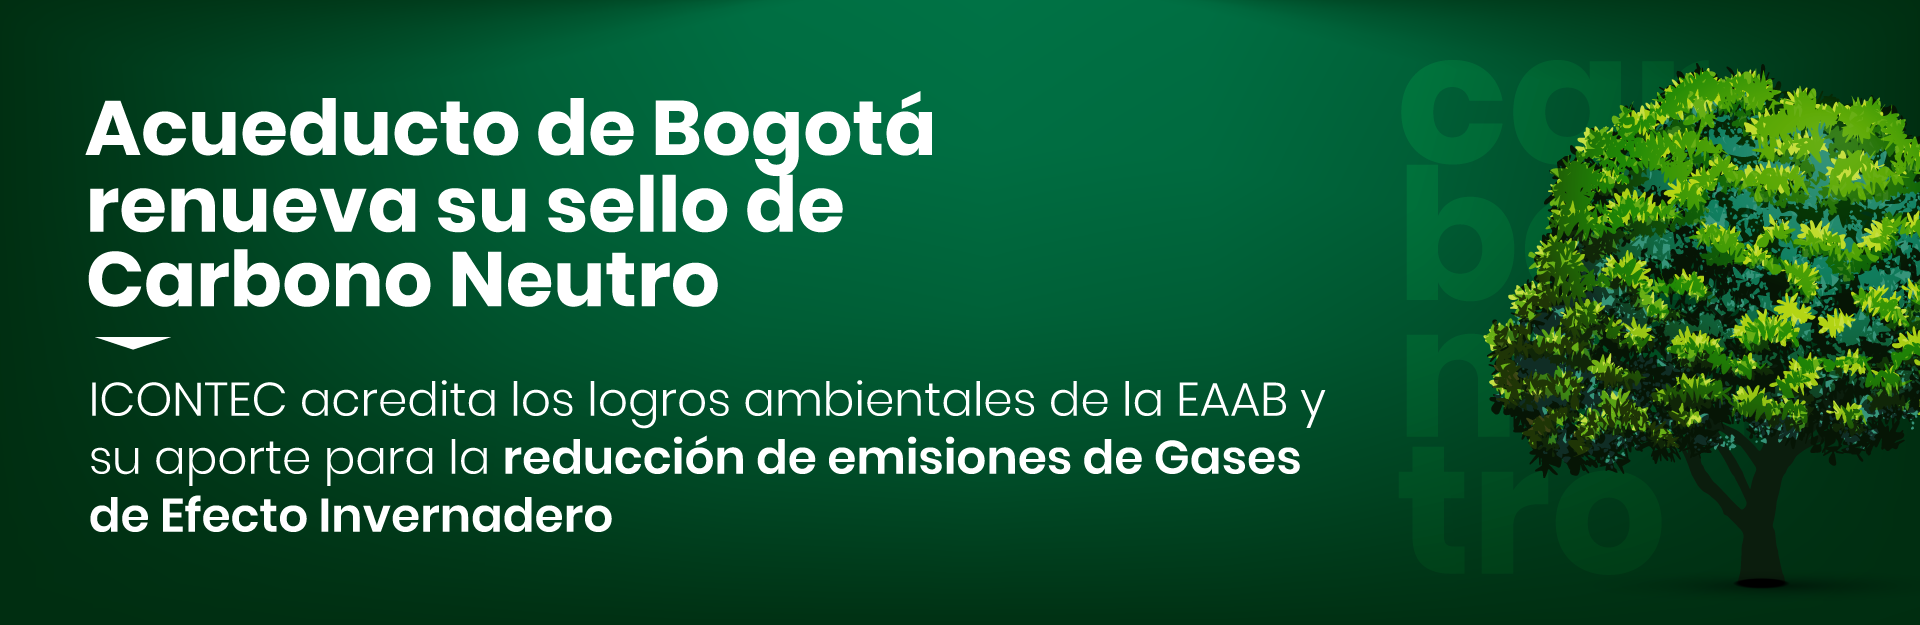 Acueducto de Bogotá renueva su sello de Carbono Neutro